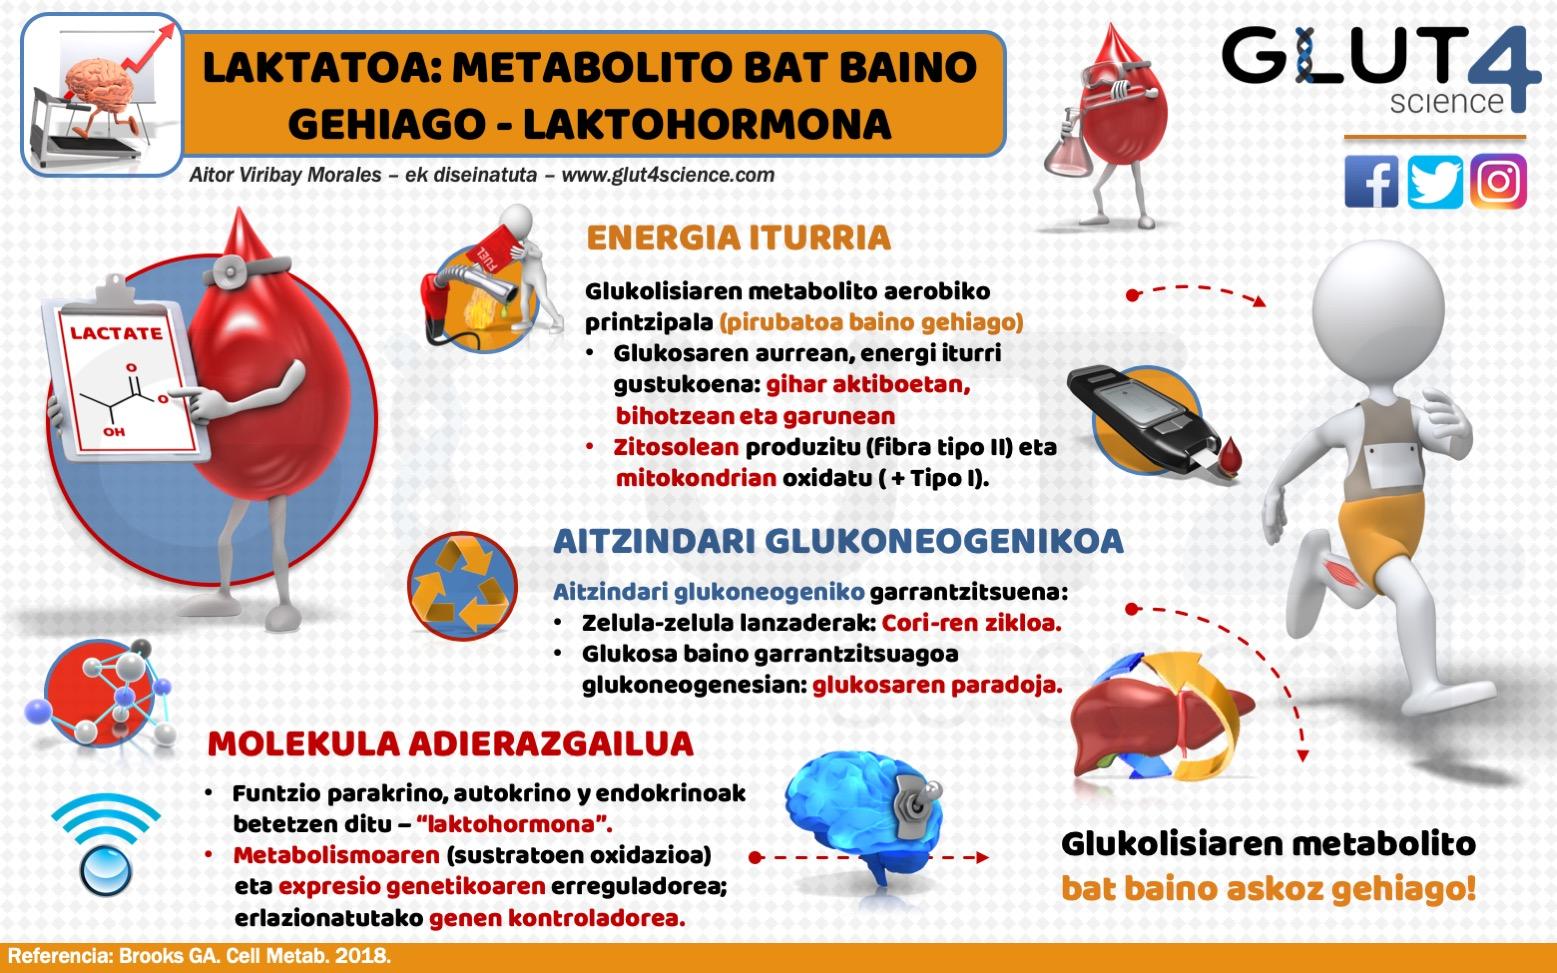 Laktatoa: Glukolisiaren metabolito bat baino askoz gehiago - Laktohormona